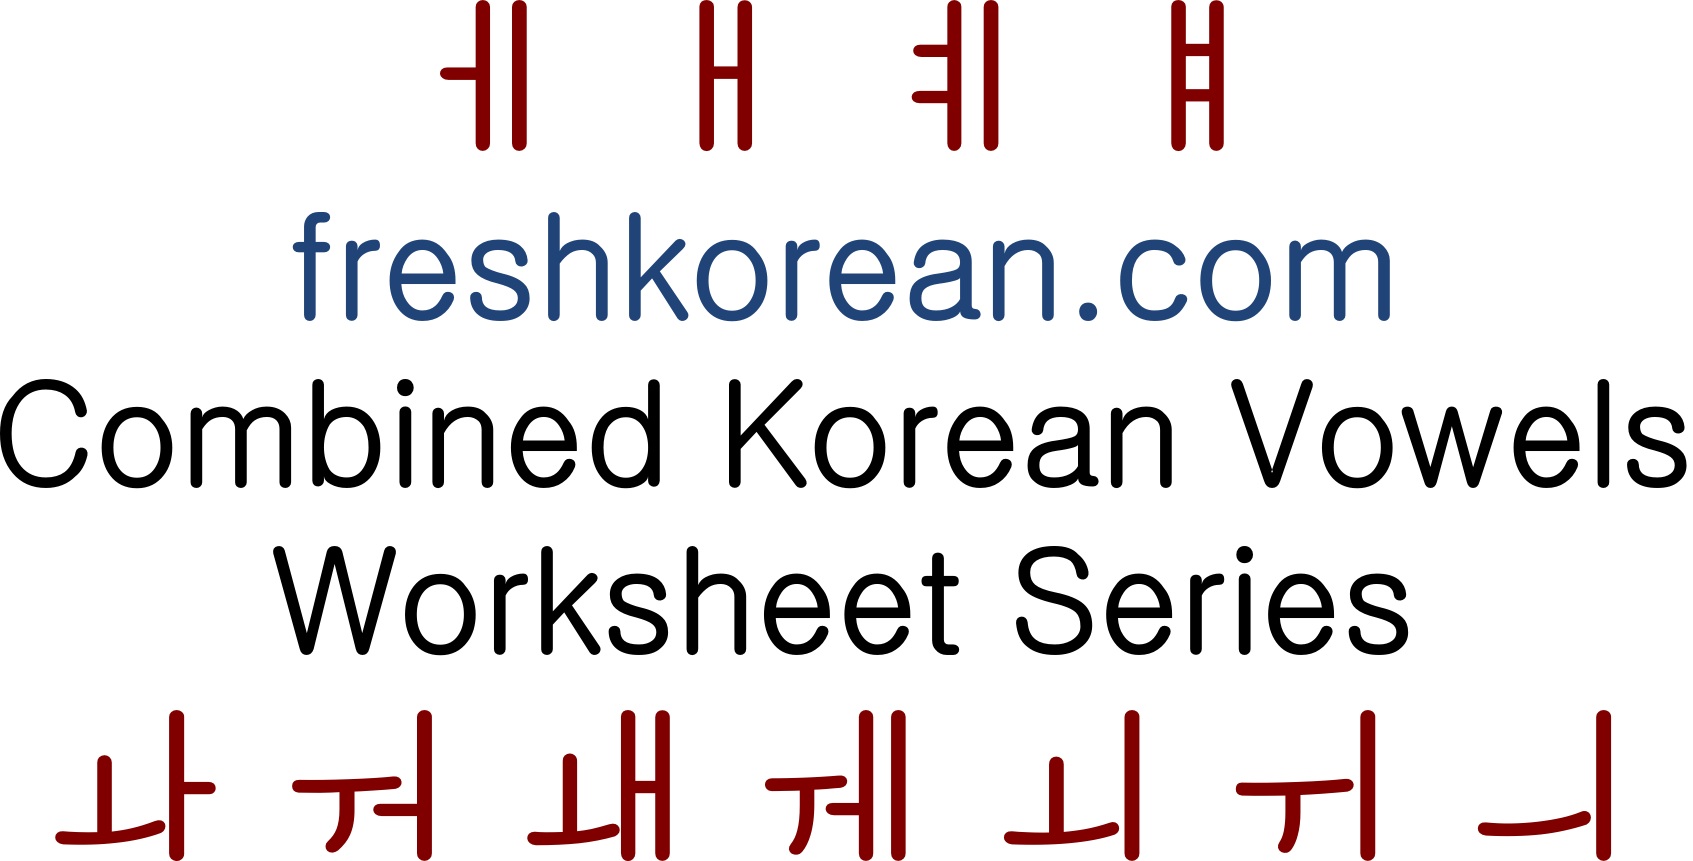 Hangul Consonants And Vowels Chart